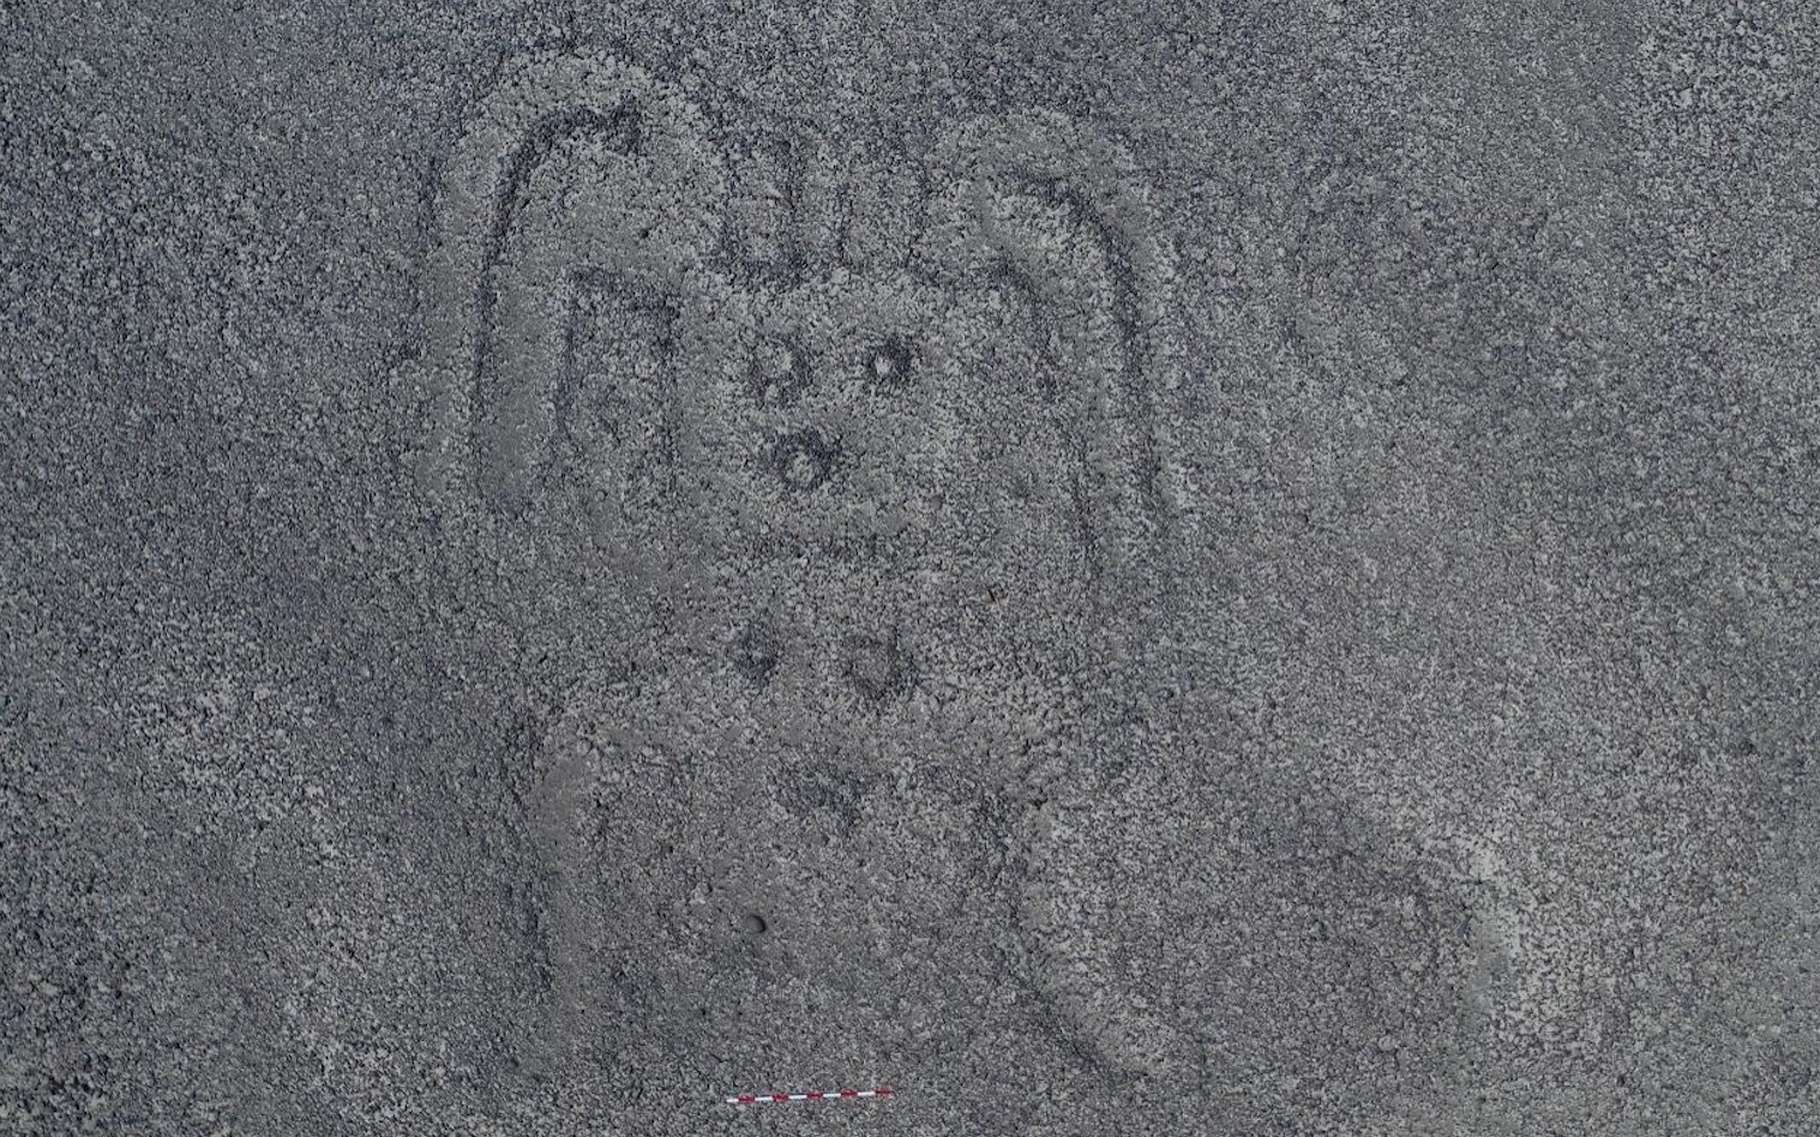 Des archéologues de l’université de Yamagata (Japon) ont mis au jour 143 nouvelles lignes de Nazca. Parmi les géoglyphes relativement petits et dits de type B, cette forme humanoïde. © Université de Yamagata